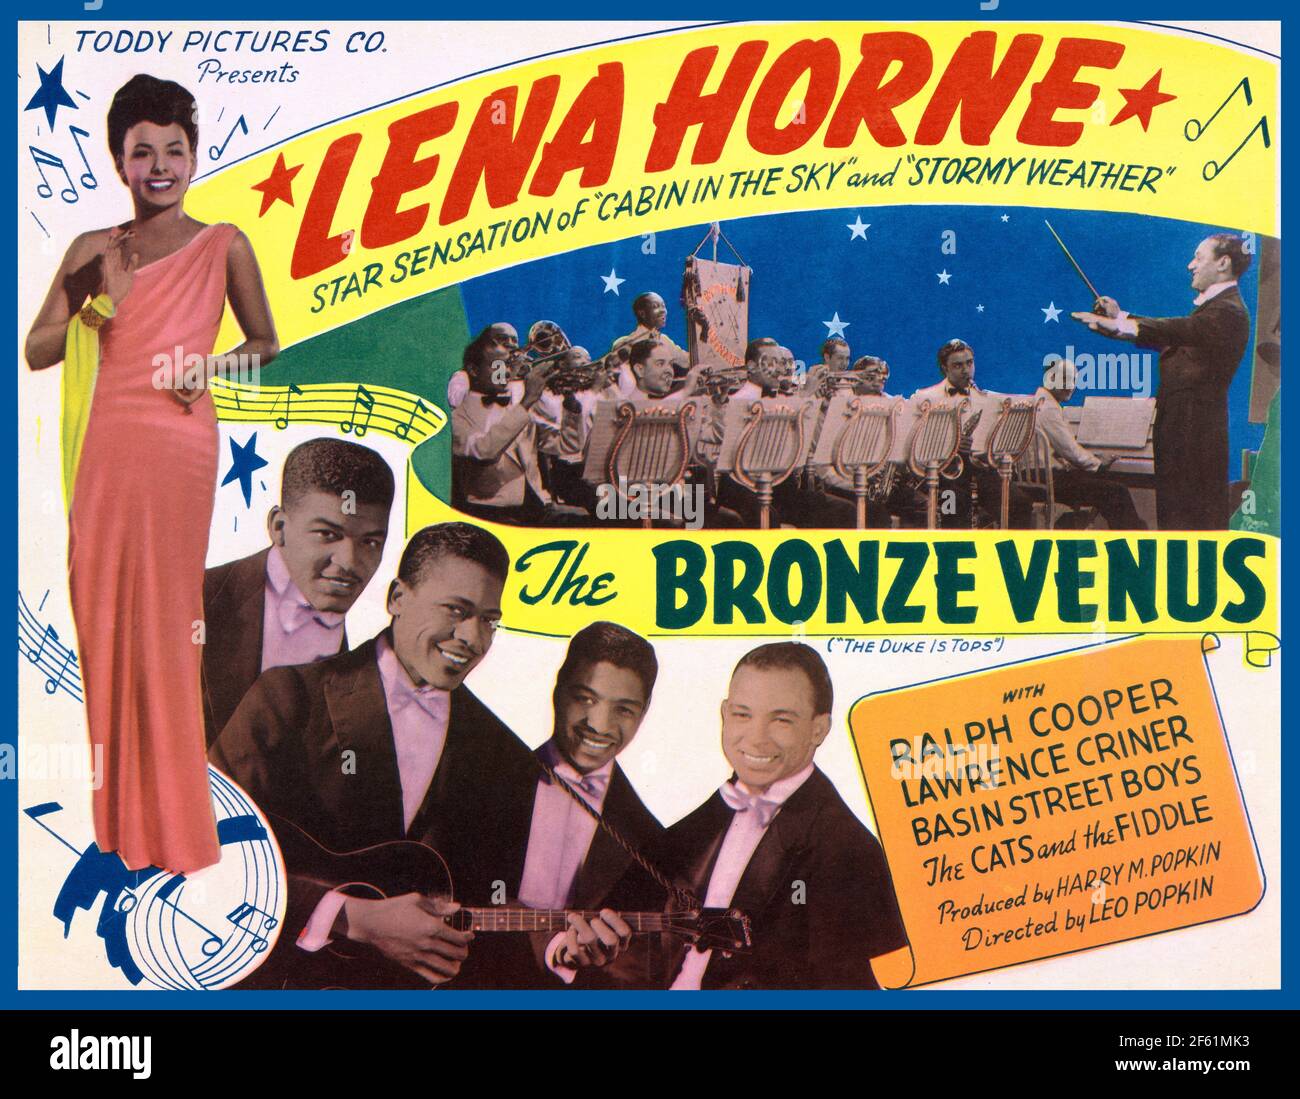 Lobby-Karte für die Bronze Venus, 1943 Stockfoto